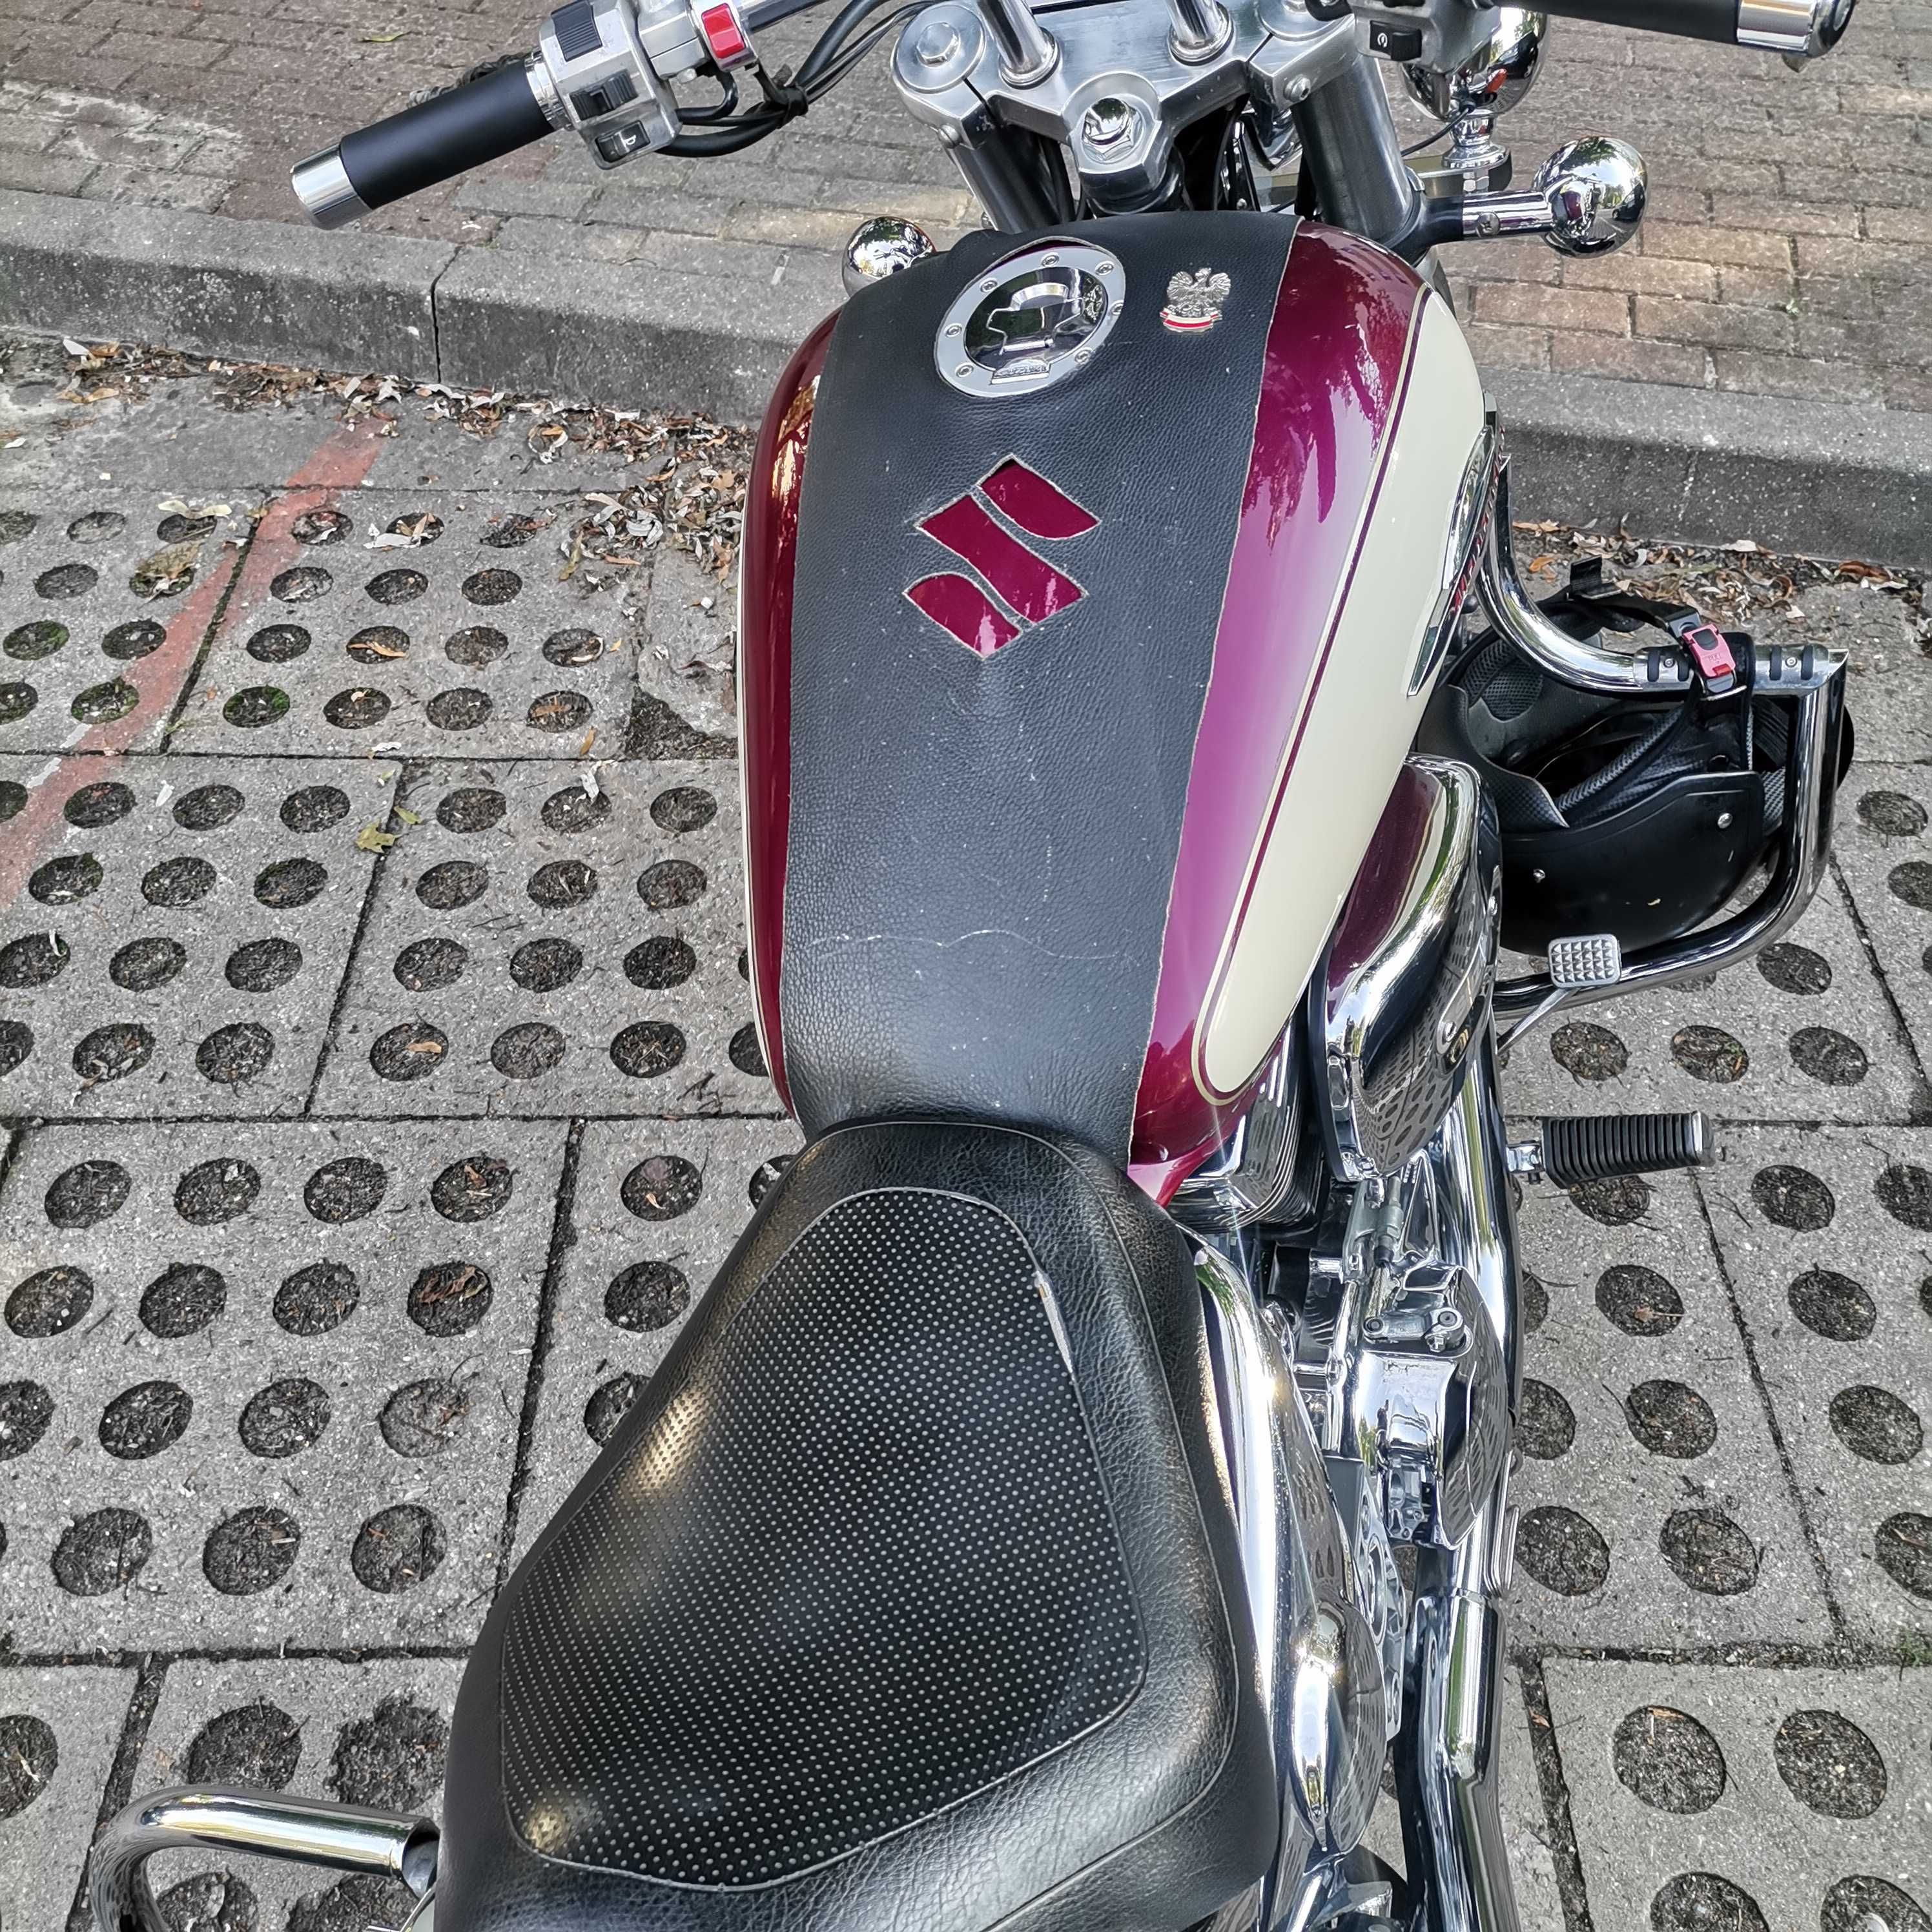 Motocykl Suzuki Marauder vz 800